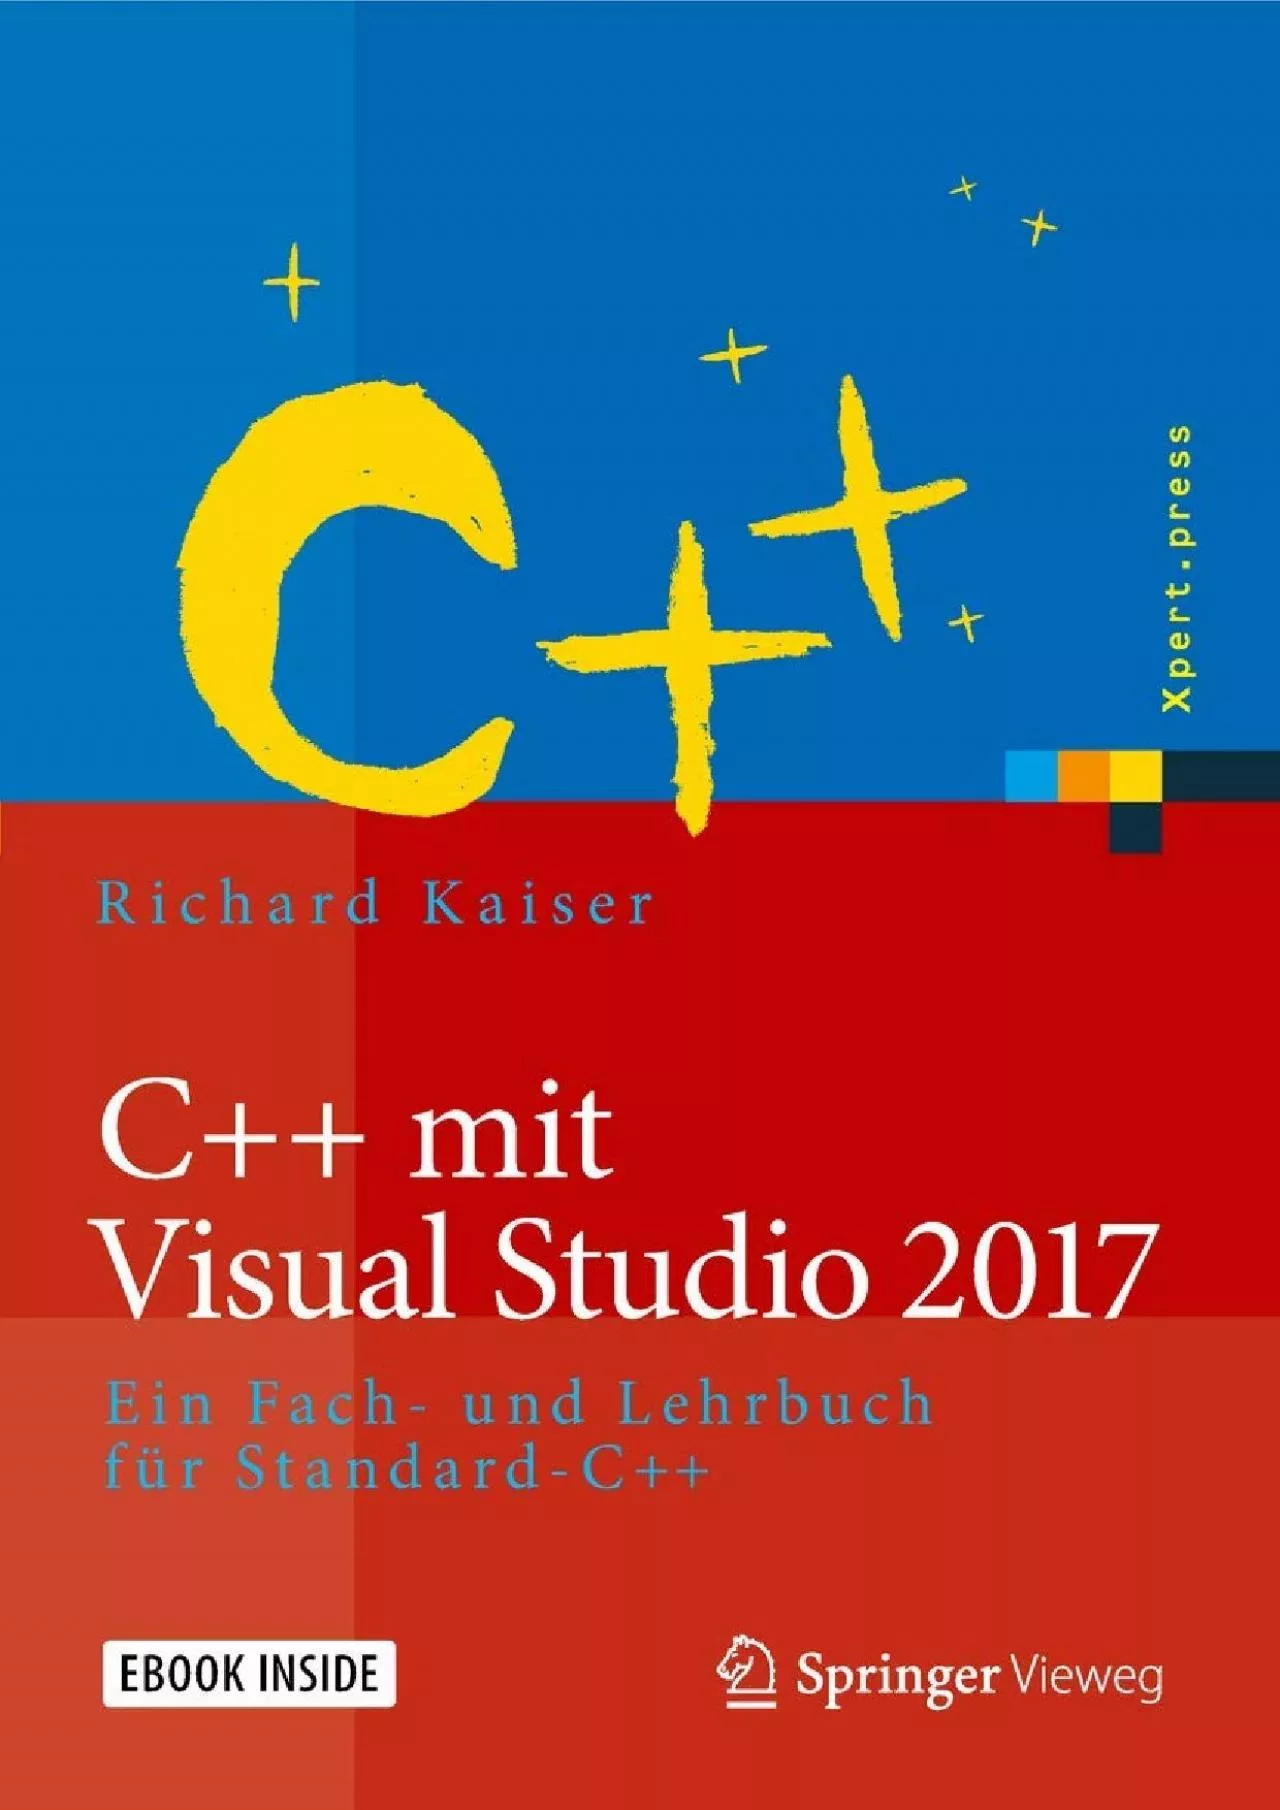 [PDF]-C++ mit Visual Studio 2017: Ein Fach- und Lehrbuch für Standard-C++ (Xpert.press)